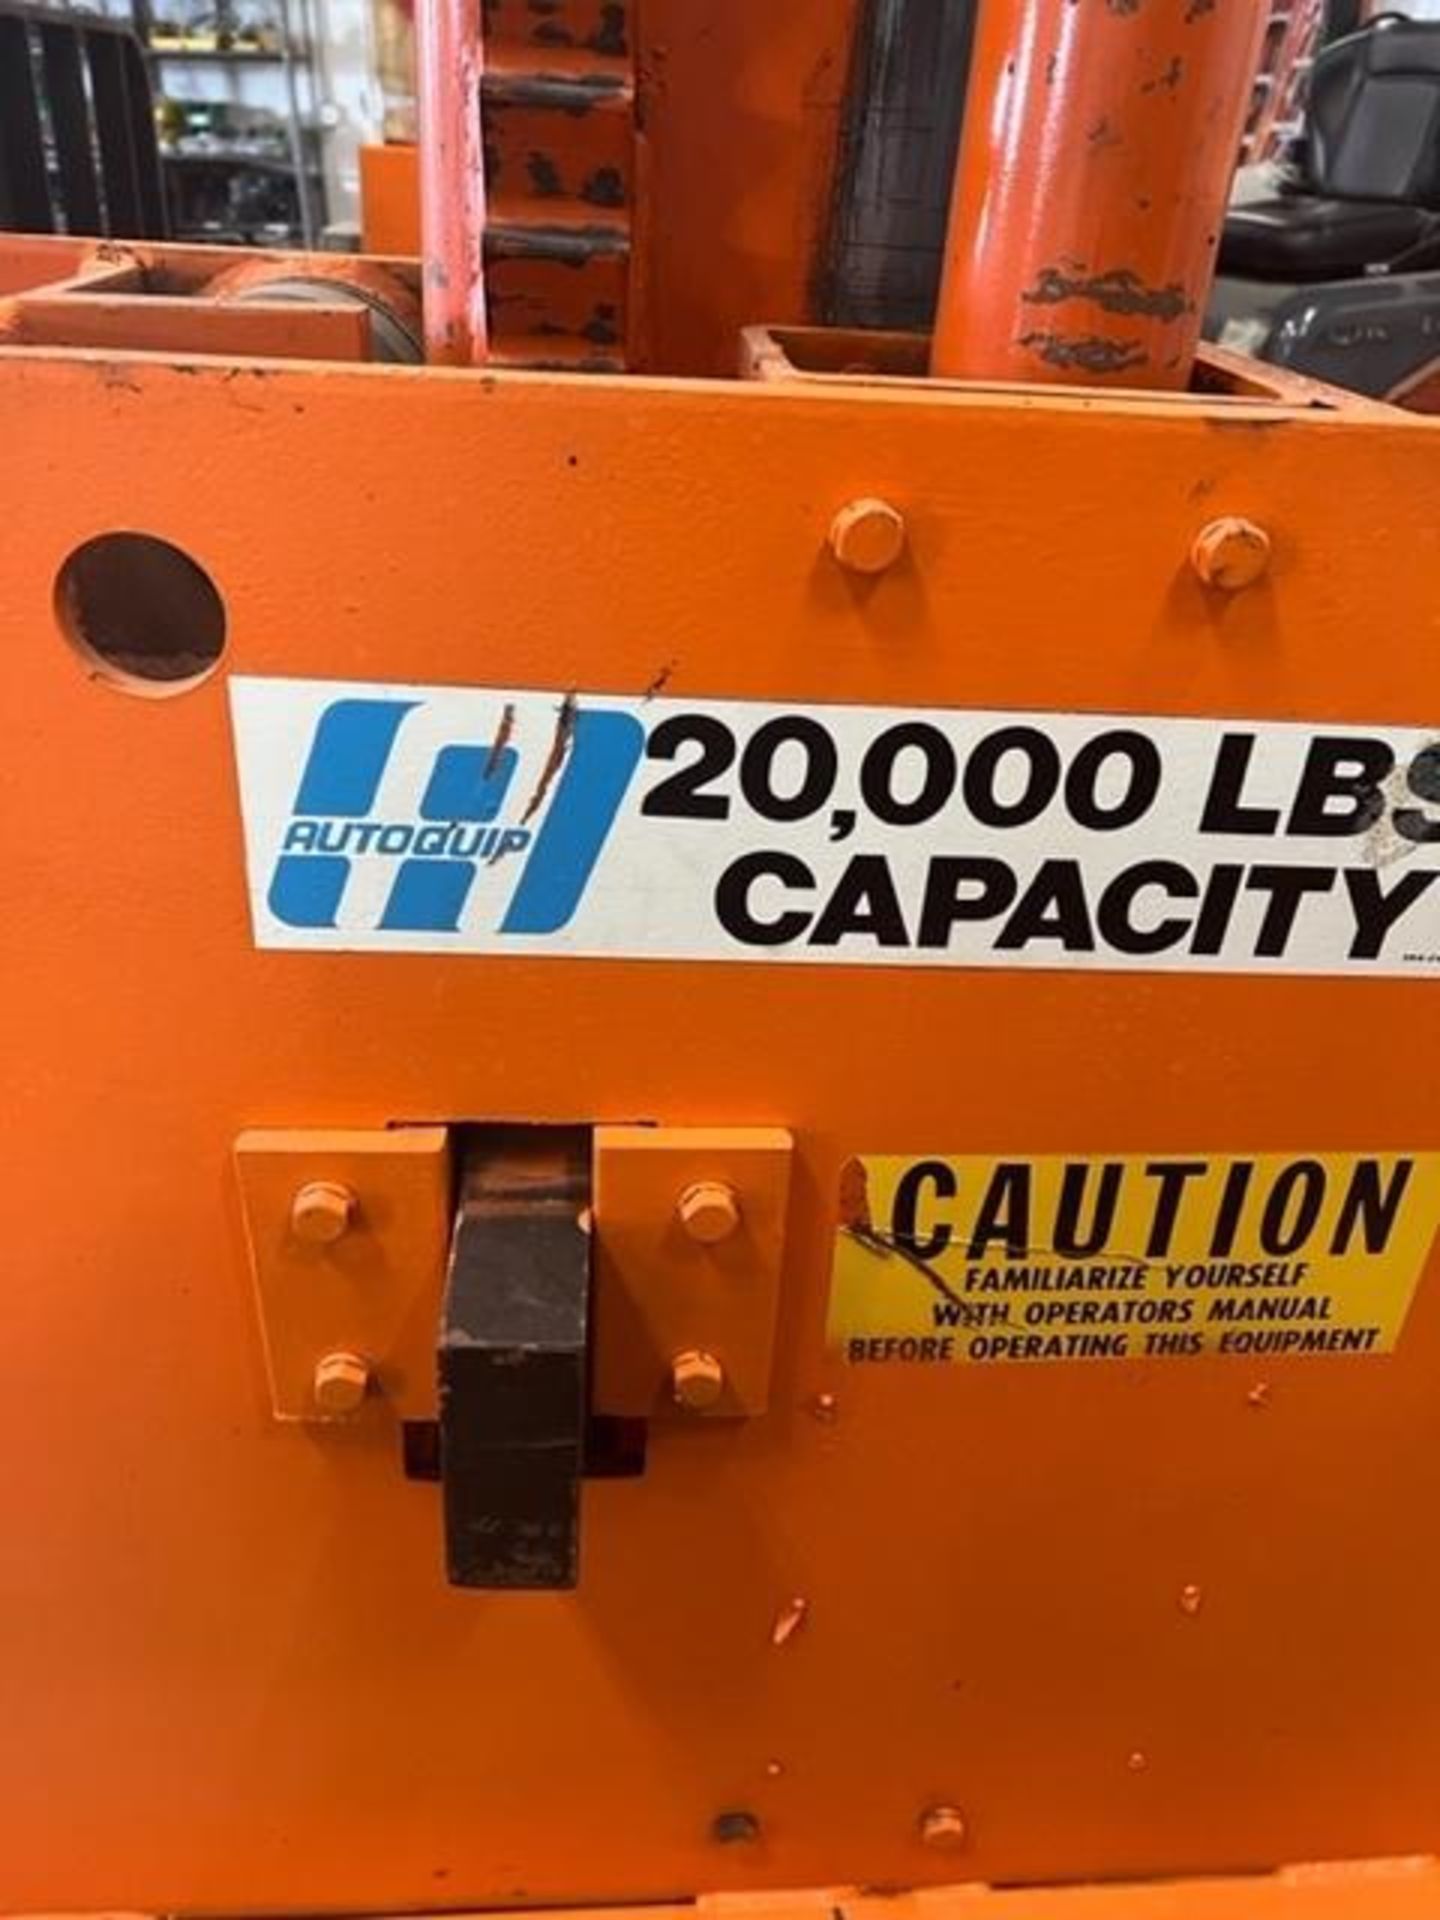 Autoquip 20,000 # Capacity Forklift Hoist. Peoria, IL